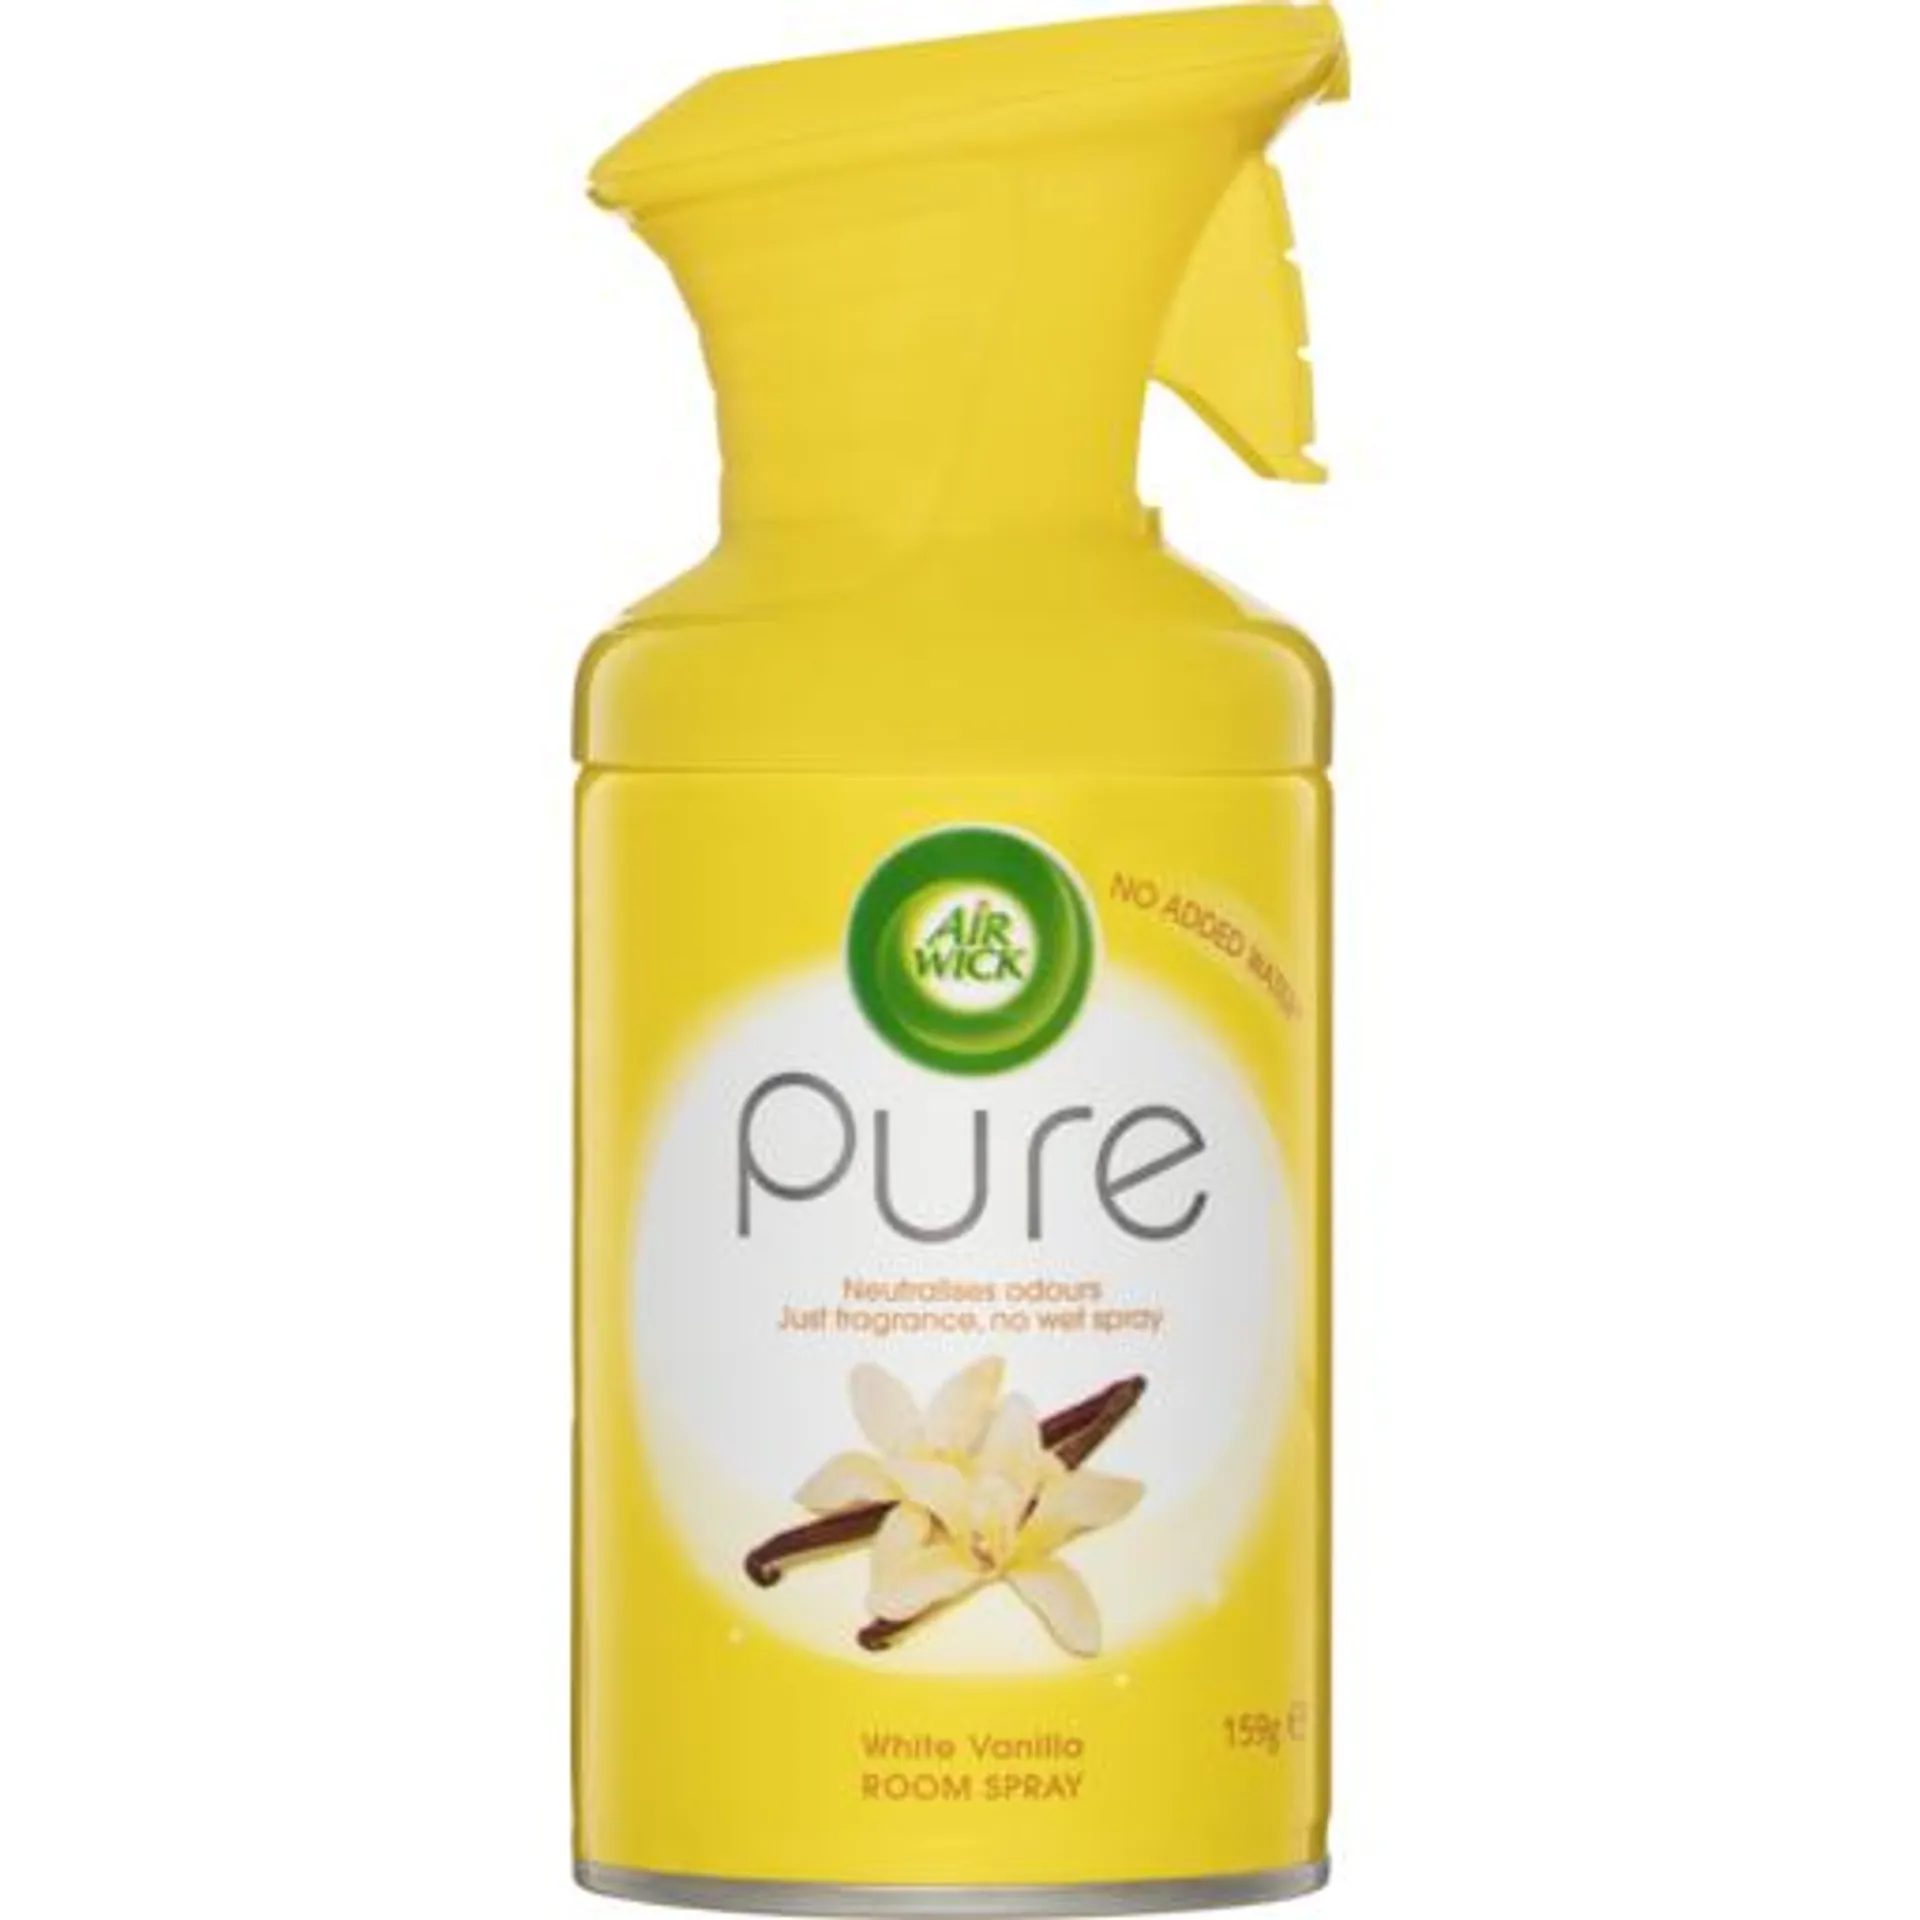 Air Wick Pure Air Freshener Spray White Vanilla 159g